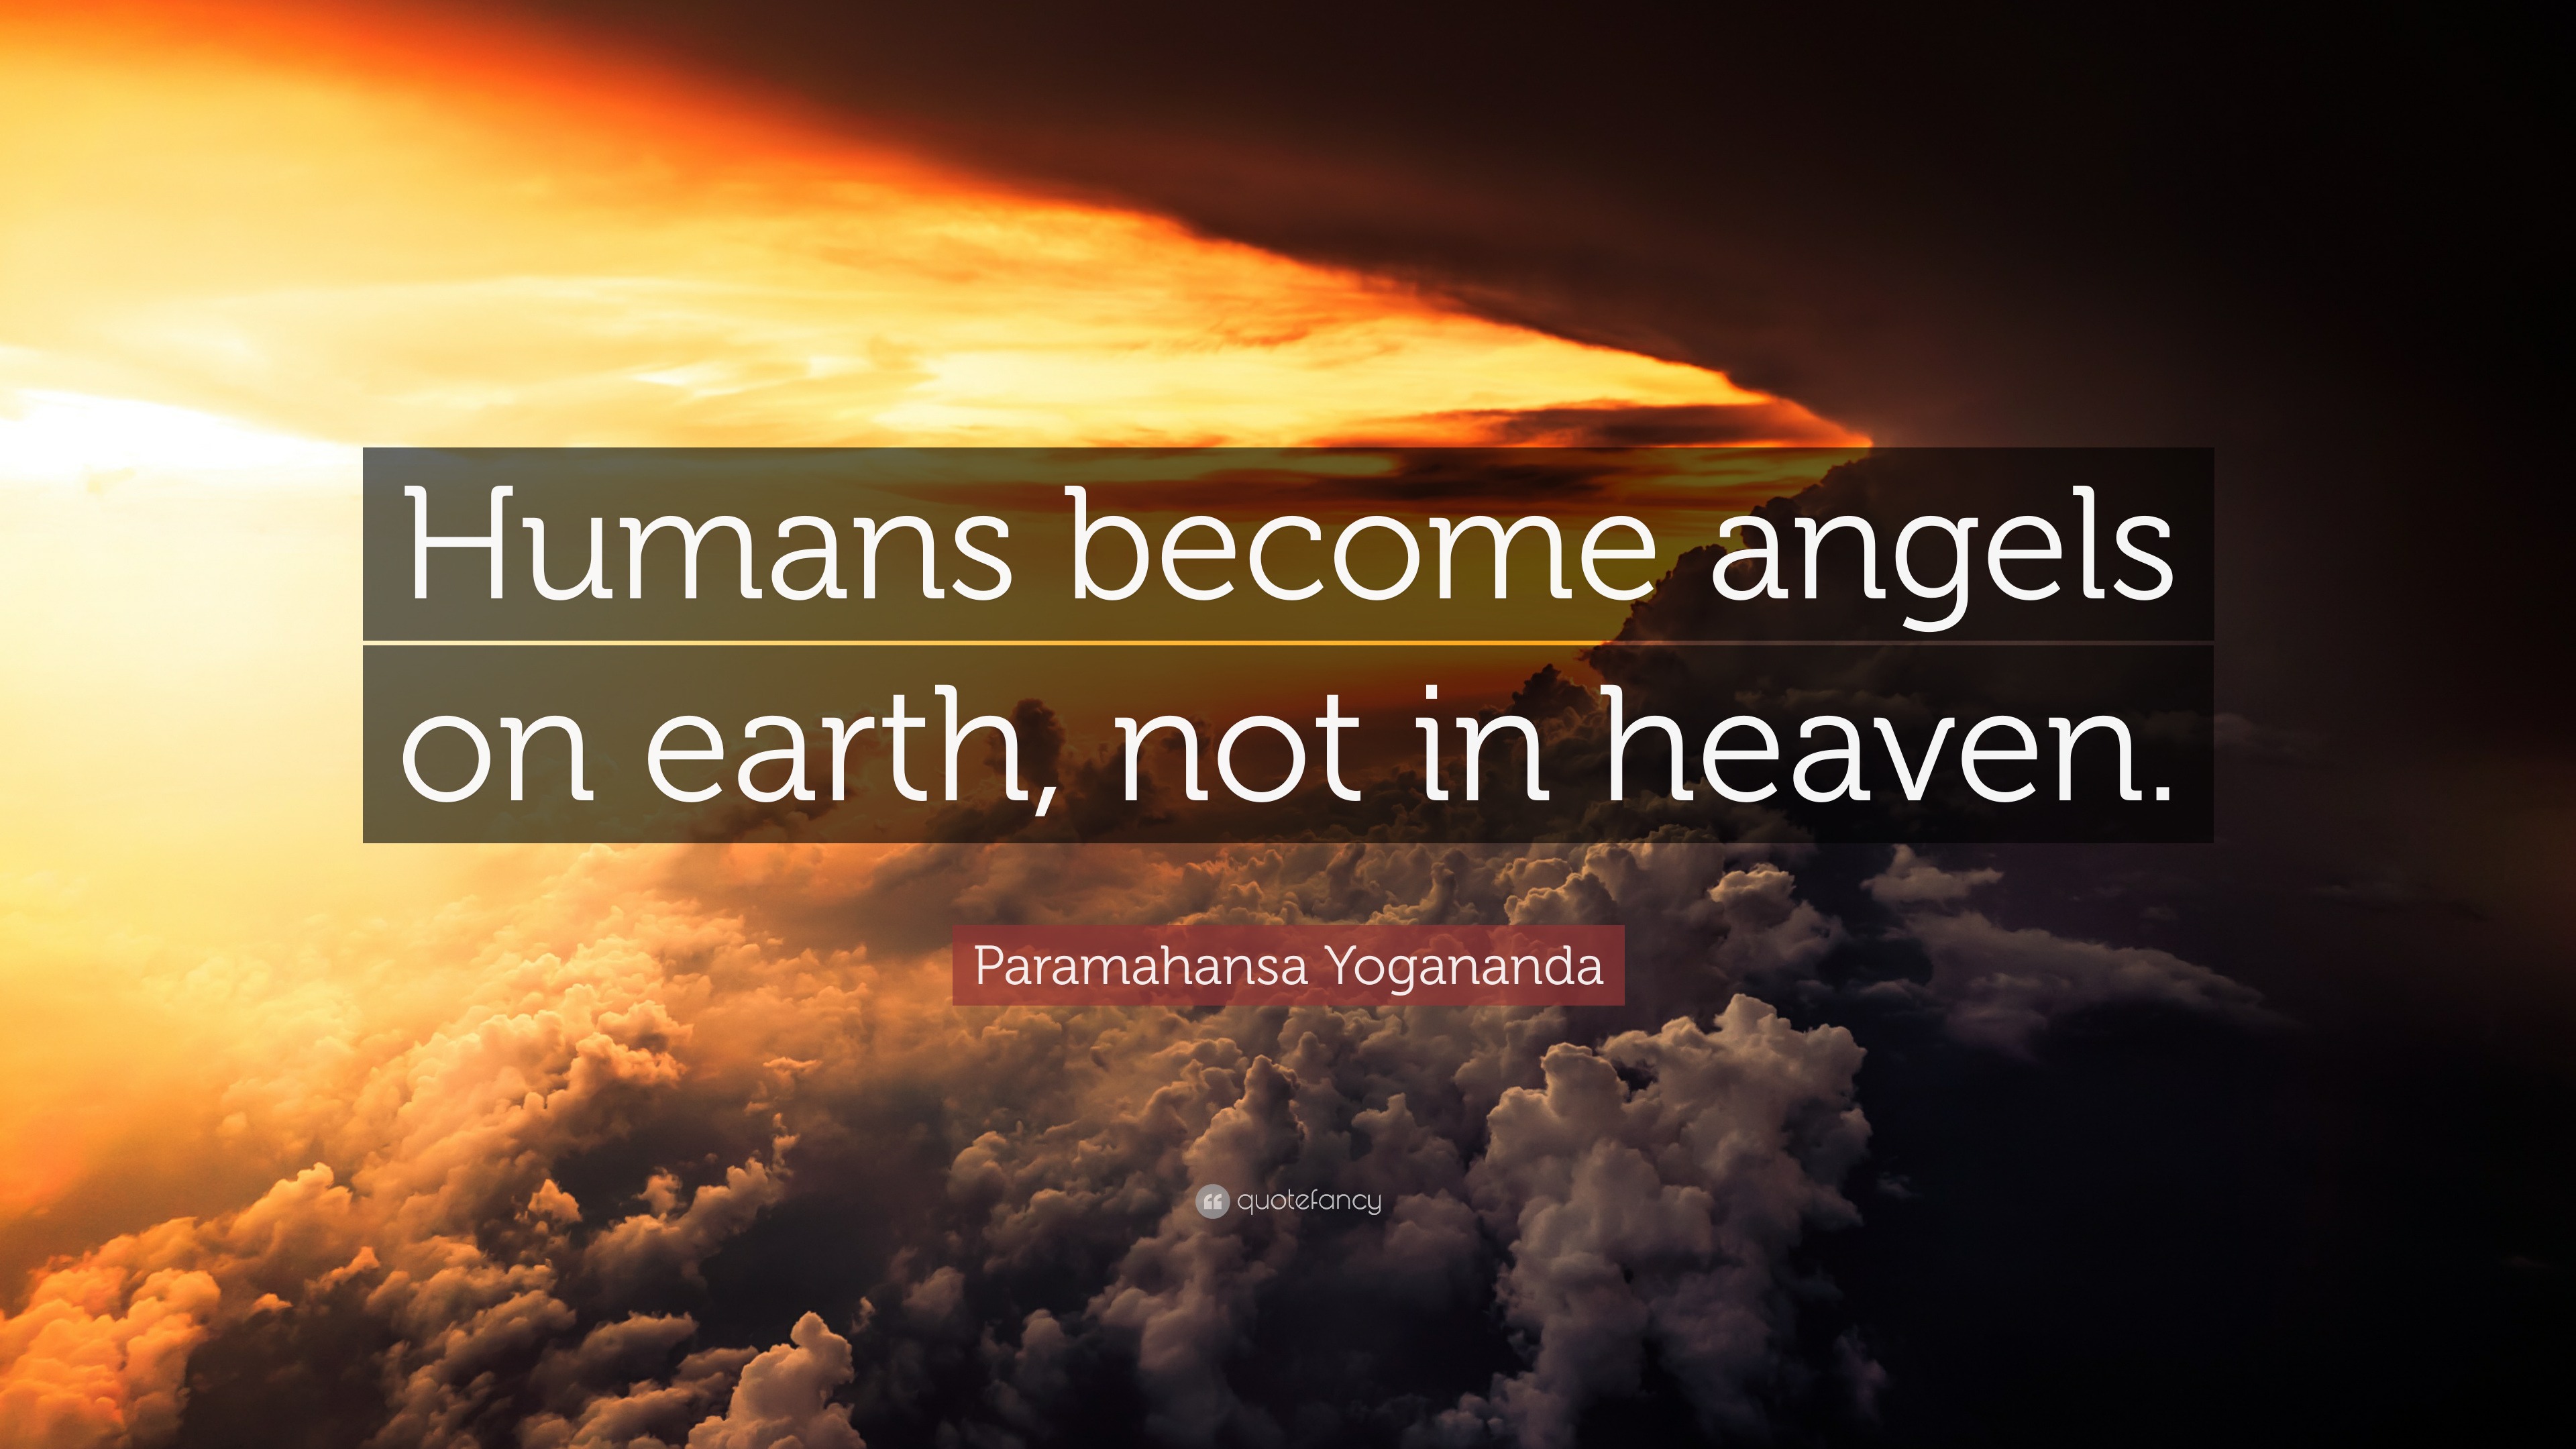 Paramahansa Yogananda Quote “Humans angels on